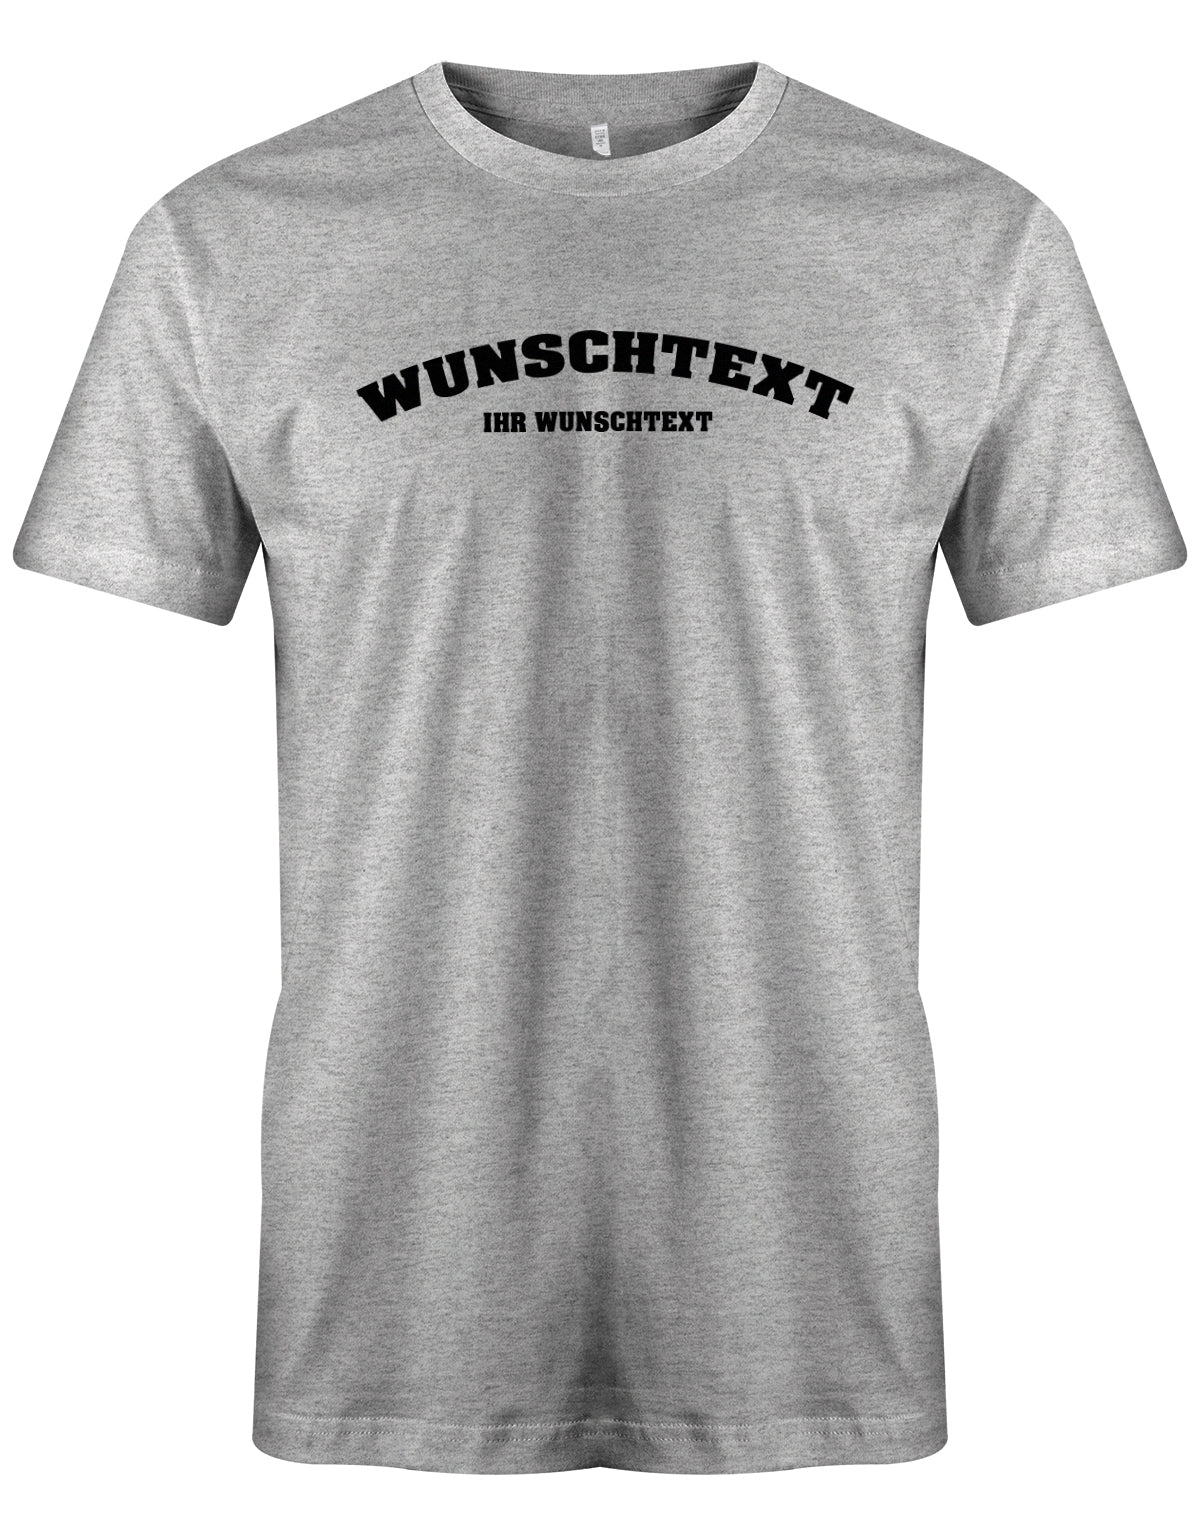 Männer Tshirt mit Wunschtext.  Abgerundeter Text im Collage-Style. Grau